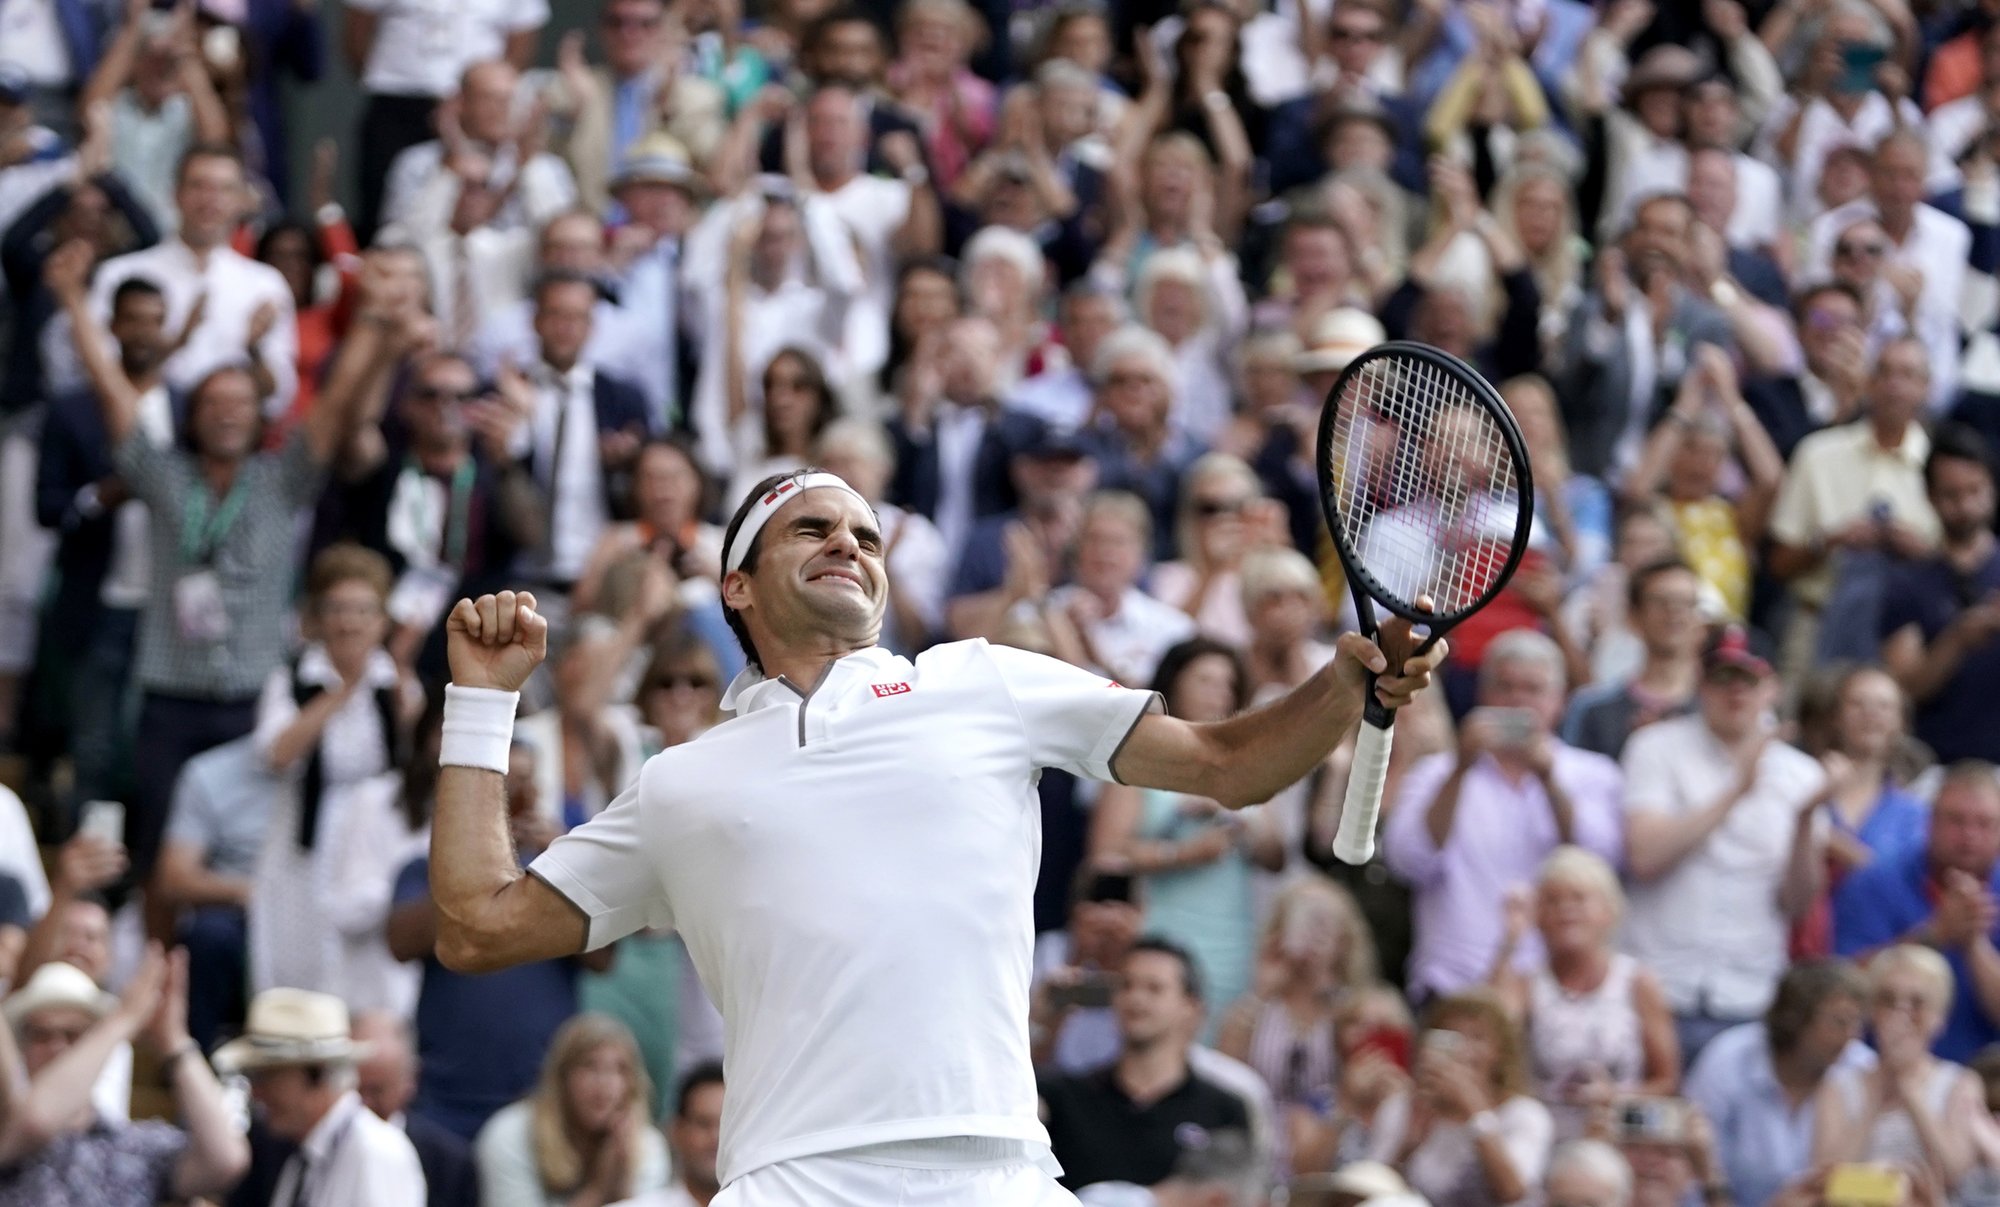 En battant Nadal, Roger Federer s'offre une occasion de remporter un 9e titre à Wimbledon, un 21e Grand Chelem au total.